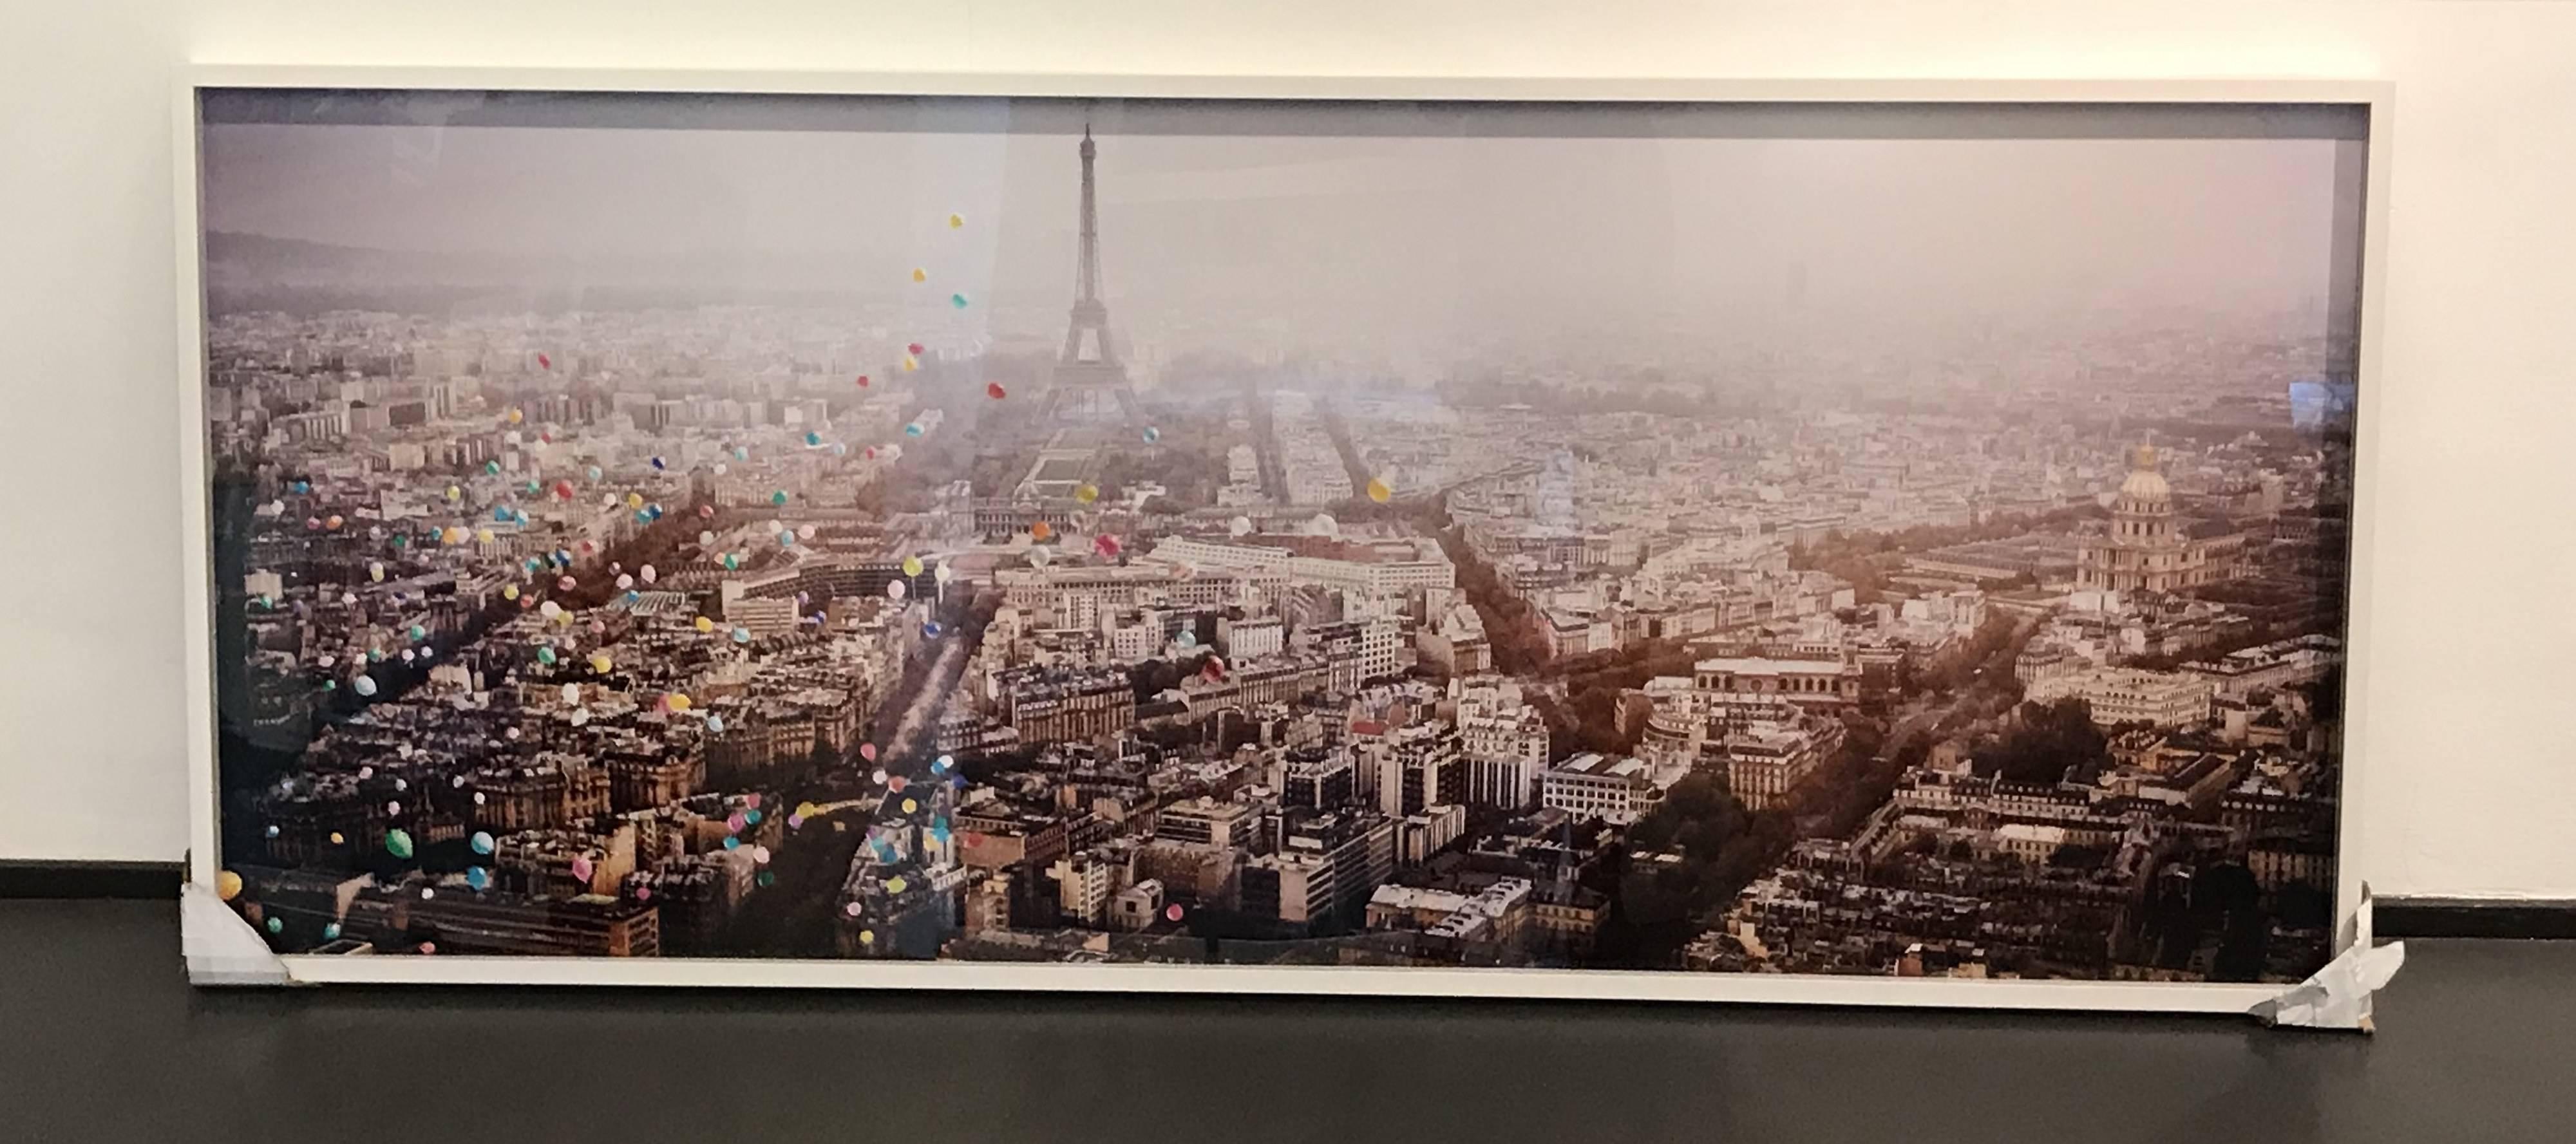 Ballons au-dessus de Paris (France) - vue aérienne de Paris avec ballons de la Tour Eiffel  - Photograph de David Drebin